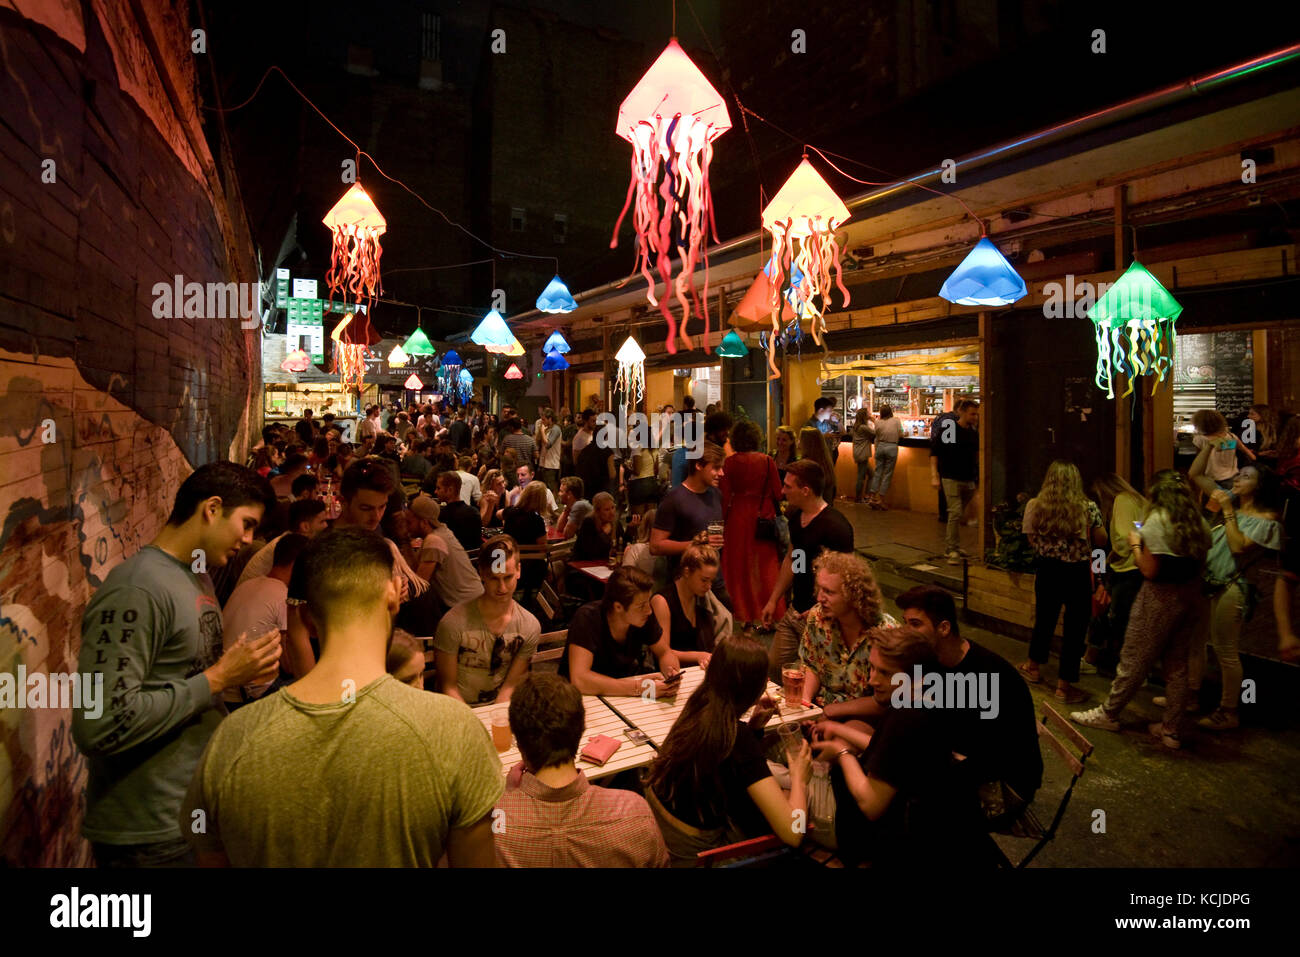 Typische nächtliche Szene in der kuplung Ruine bar Pub in Budapest mit Leuten trinken Sitzen stehend reden.... Stockfoto